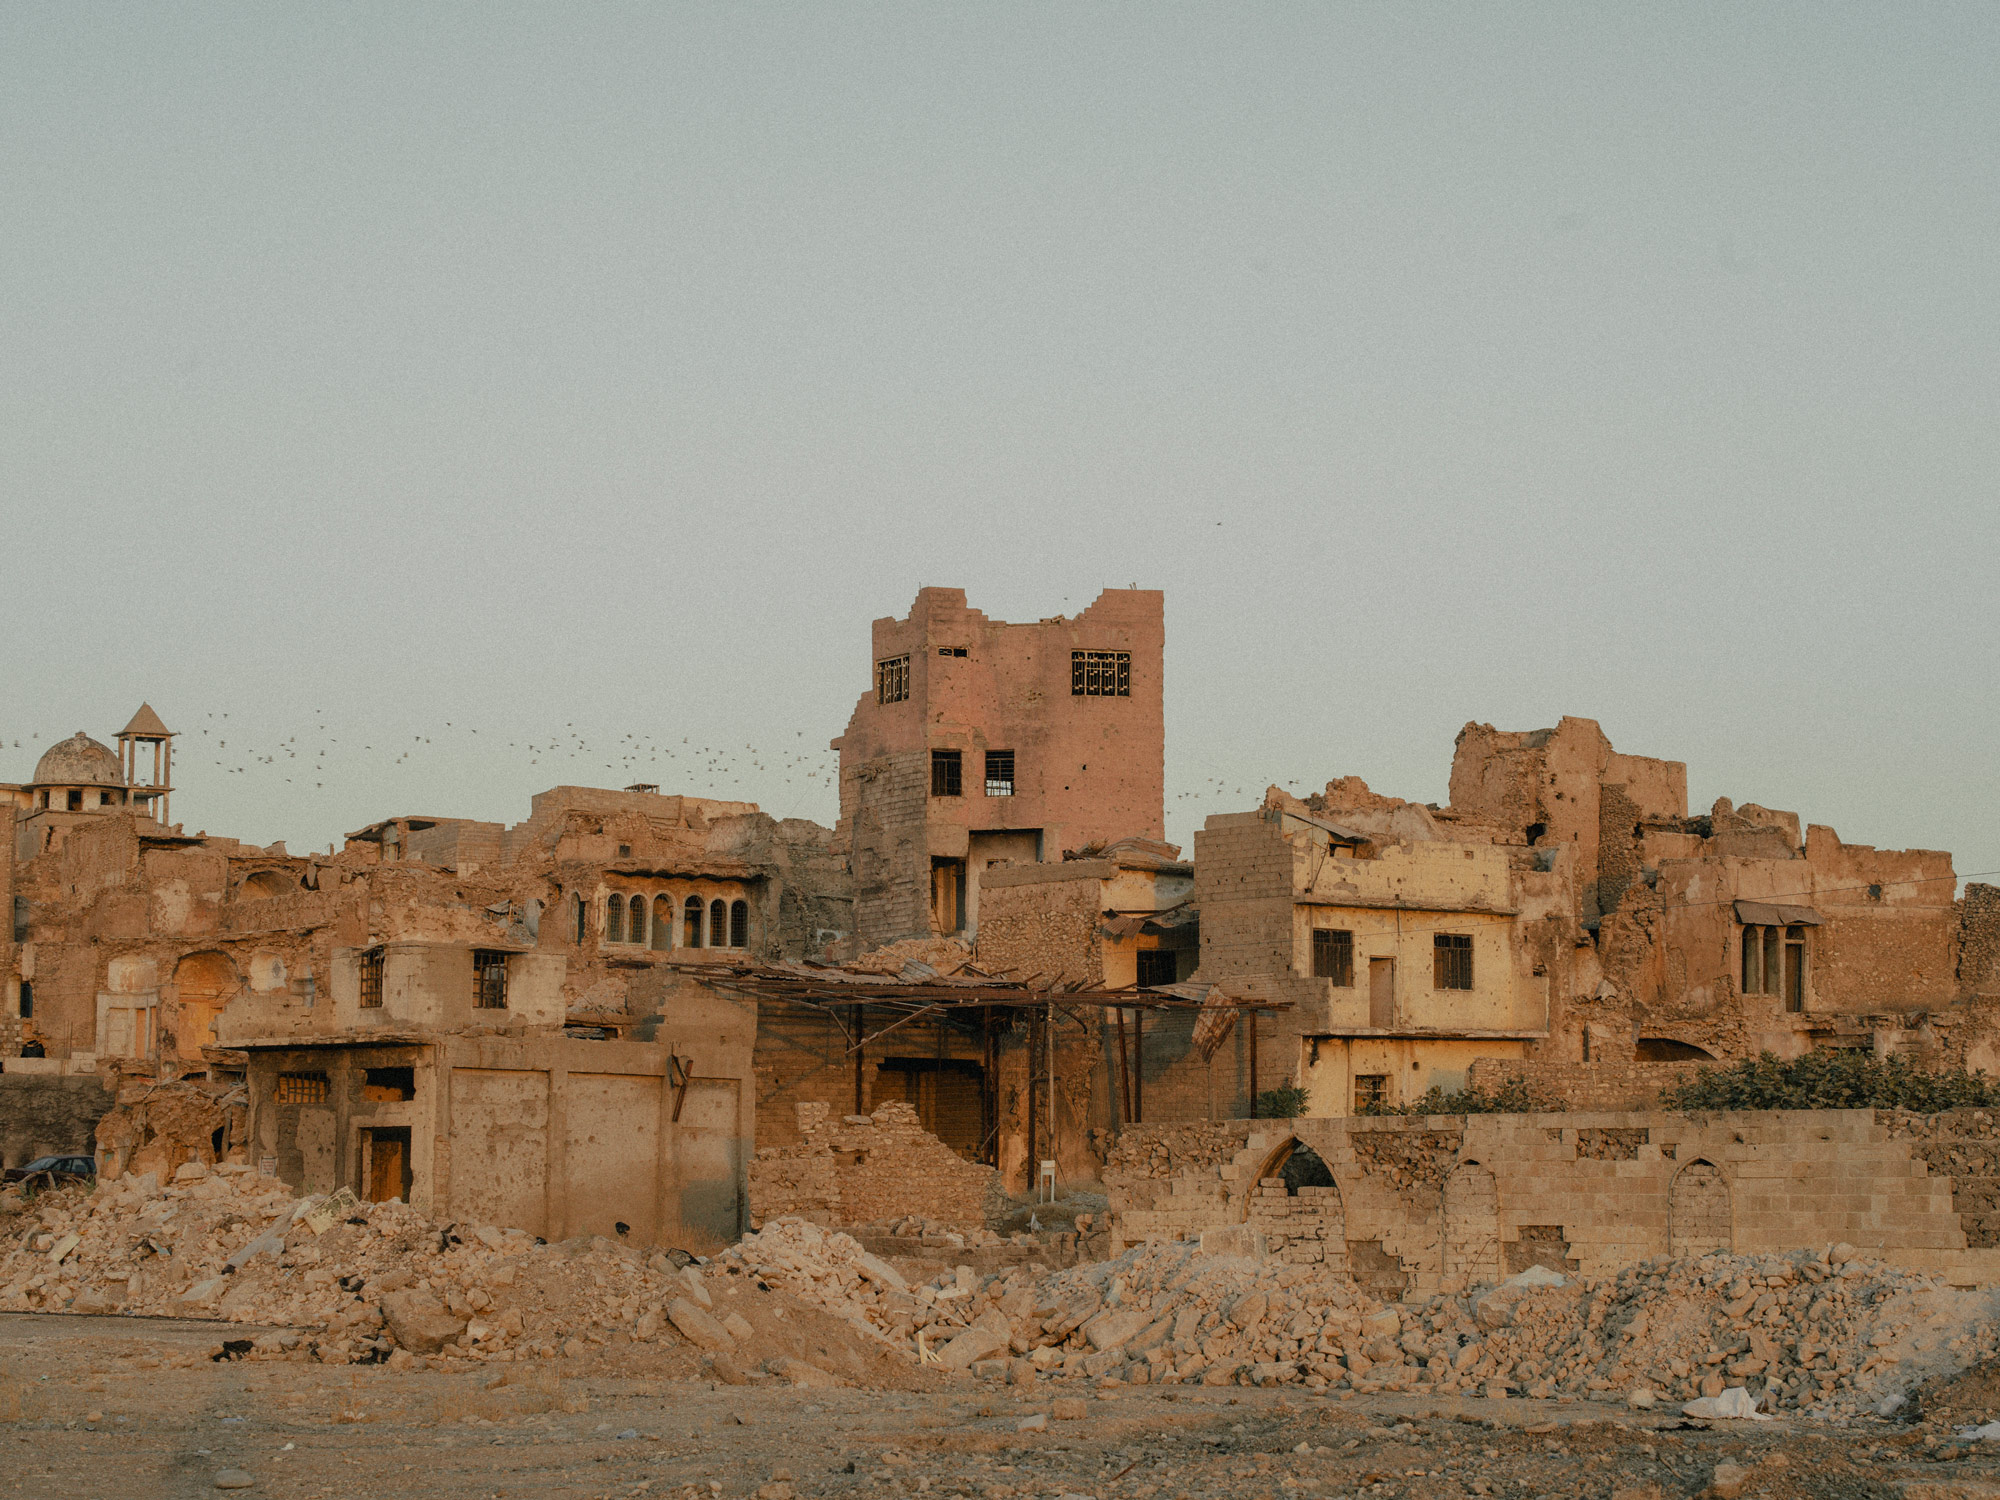 Die Altstadt von Mossul in Trümmern. Nach dem Konflikt sind nur wenige Menschen zurückgekehrt, um ihre Häuser wieder aufzubauen.